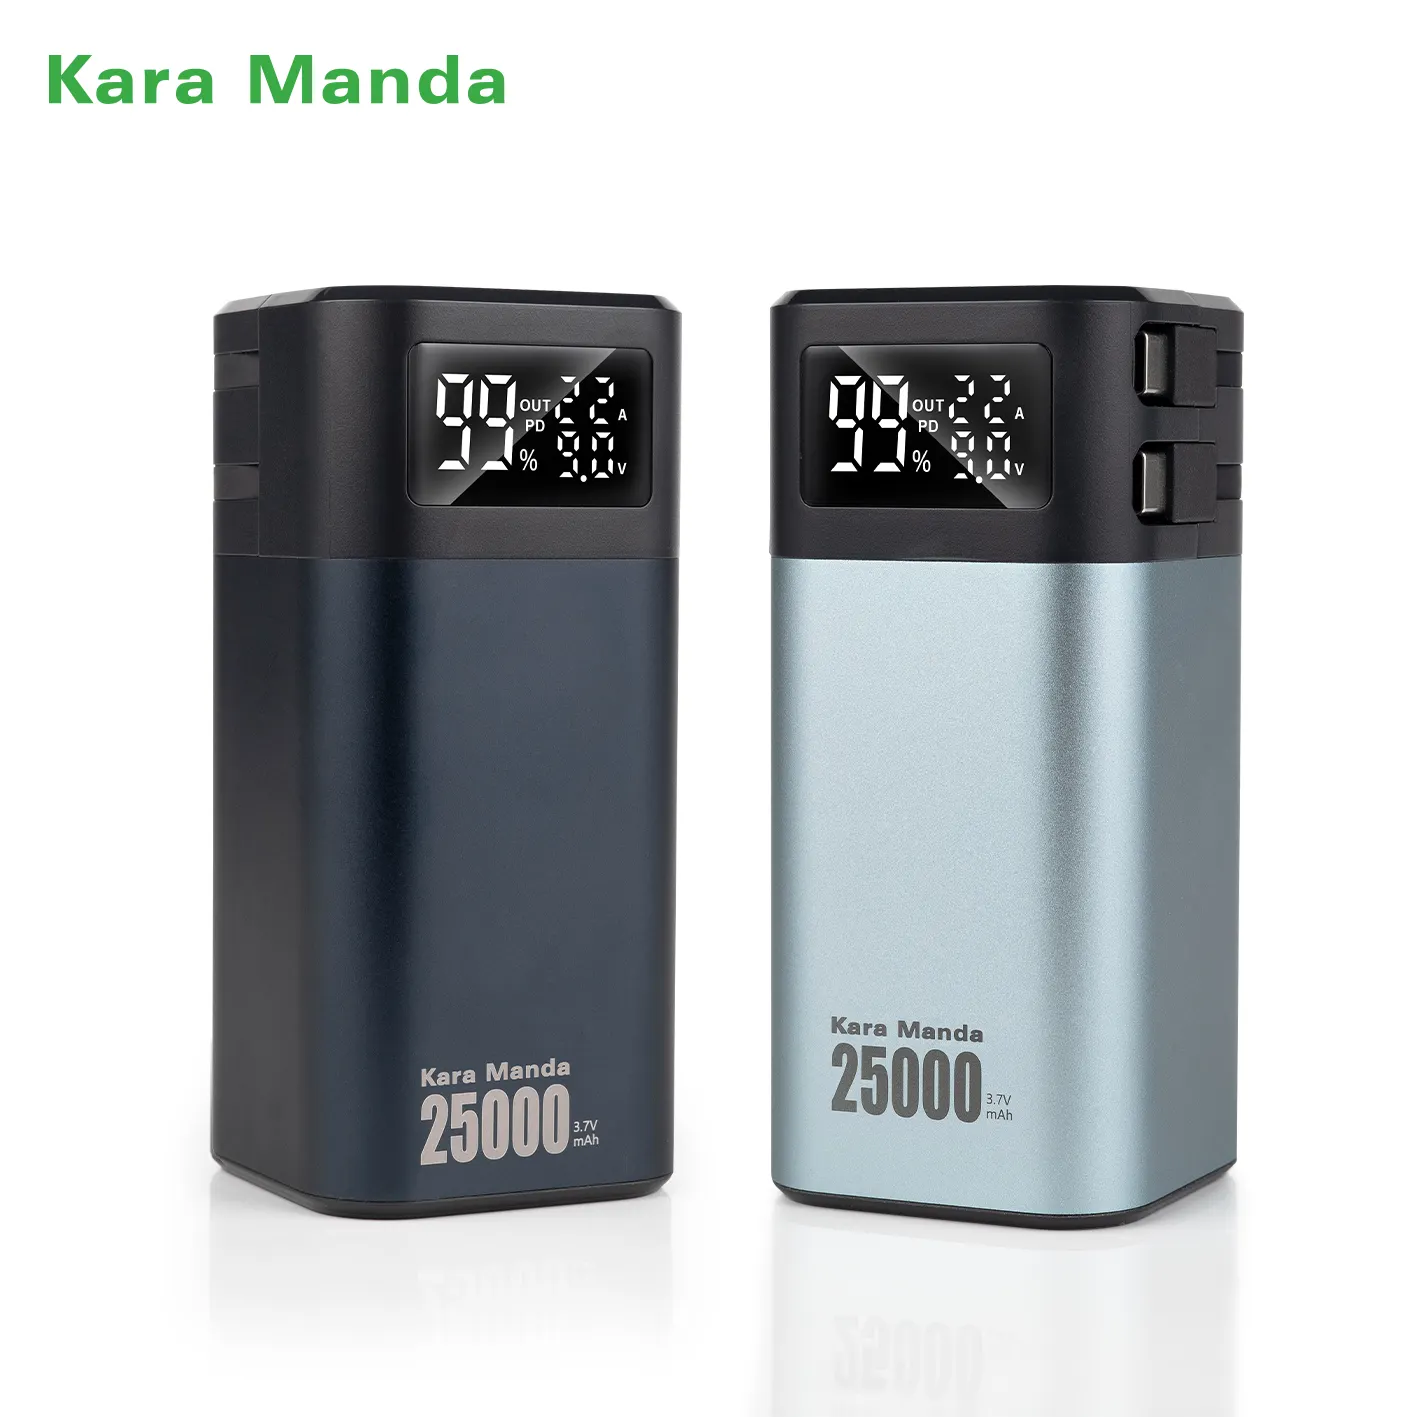 Kara Manda Hot Sale Grote Capaciteit Laptop Power Bank Snel Opladen Mini Draagbare Powerbank Mobiele Oplader Met Oplaadkabels